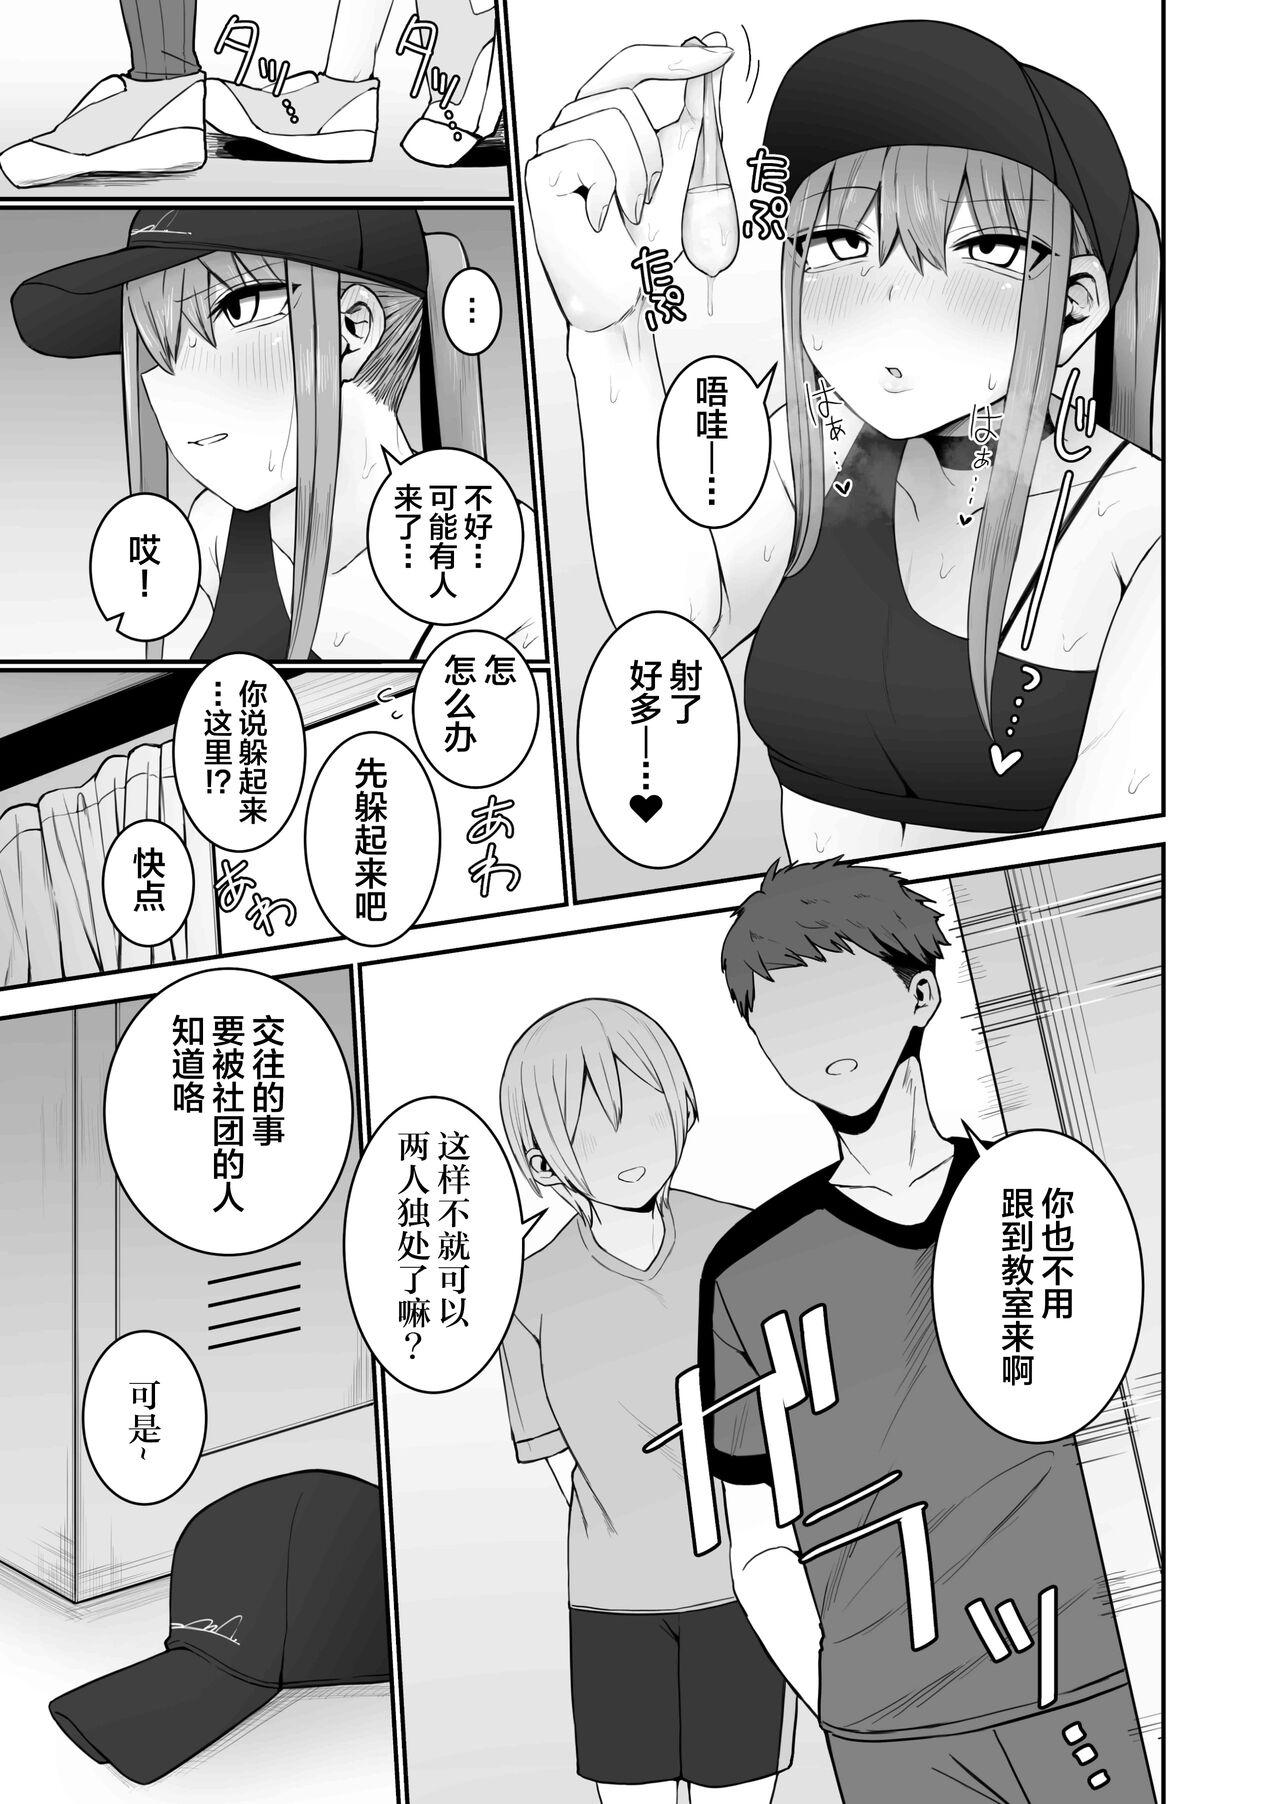 Groping Ishiki Tobu made Ecchi Shiyo? 2 - Original Humiliation - Page 11